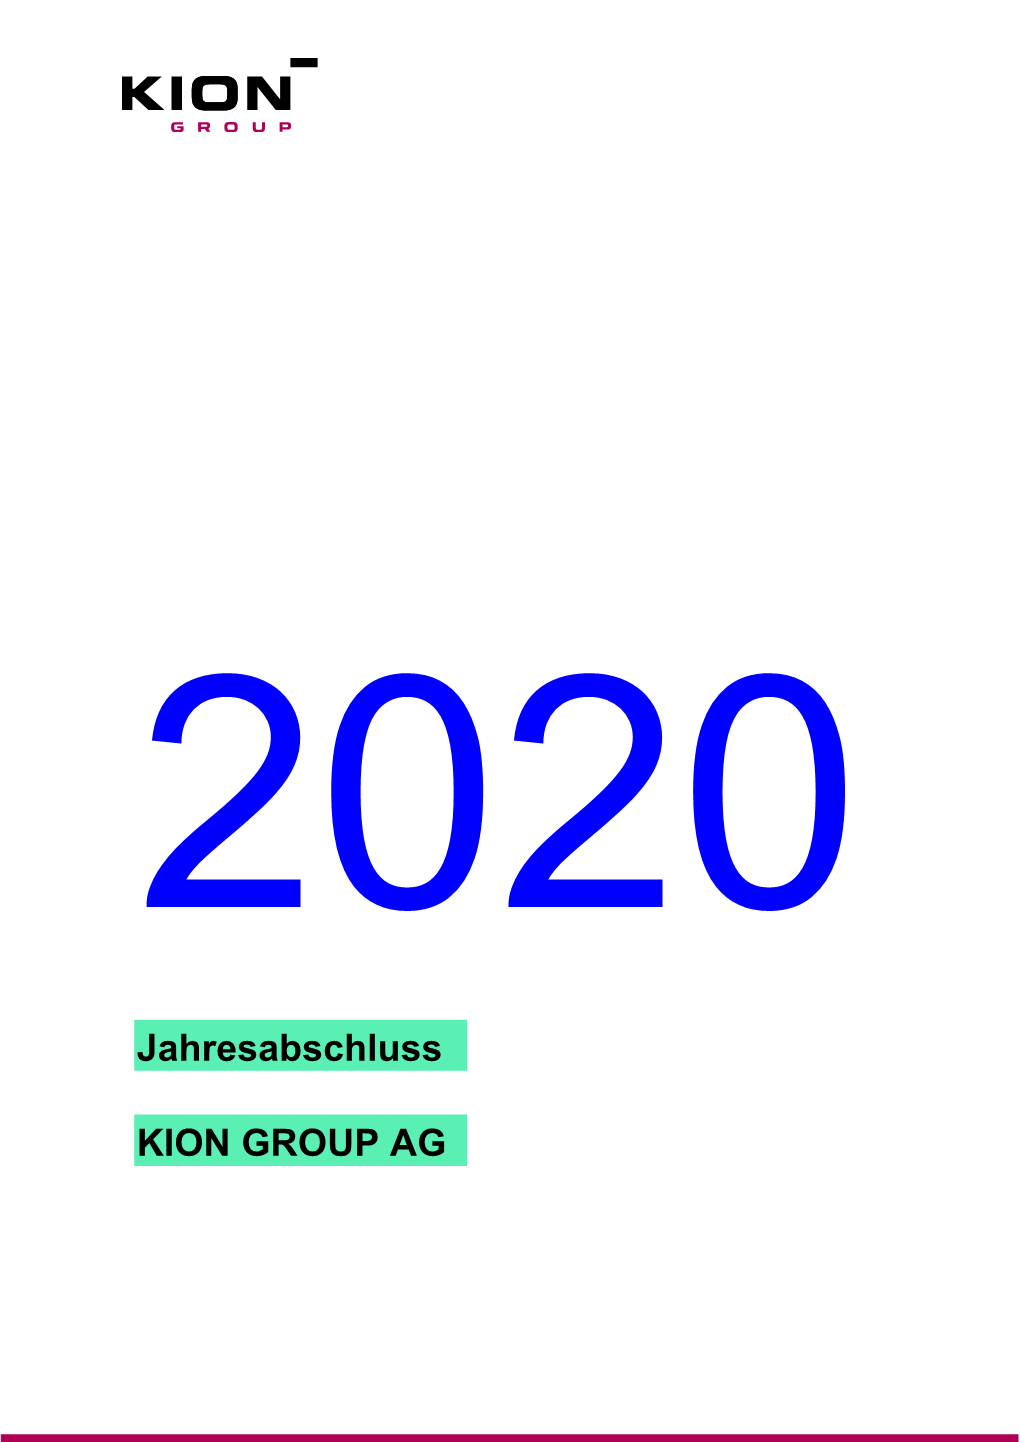 Jahresabschluss Der KION GROUP AG Für Das Geschäftsjahr 2020